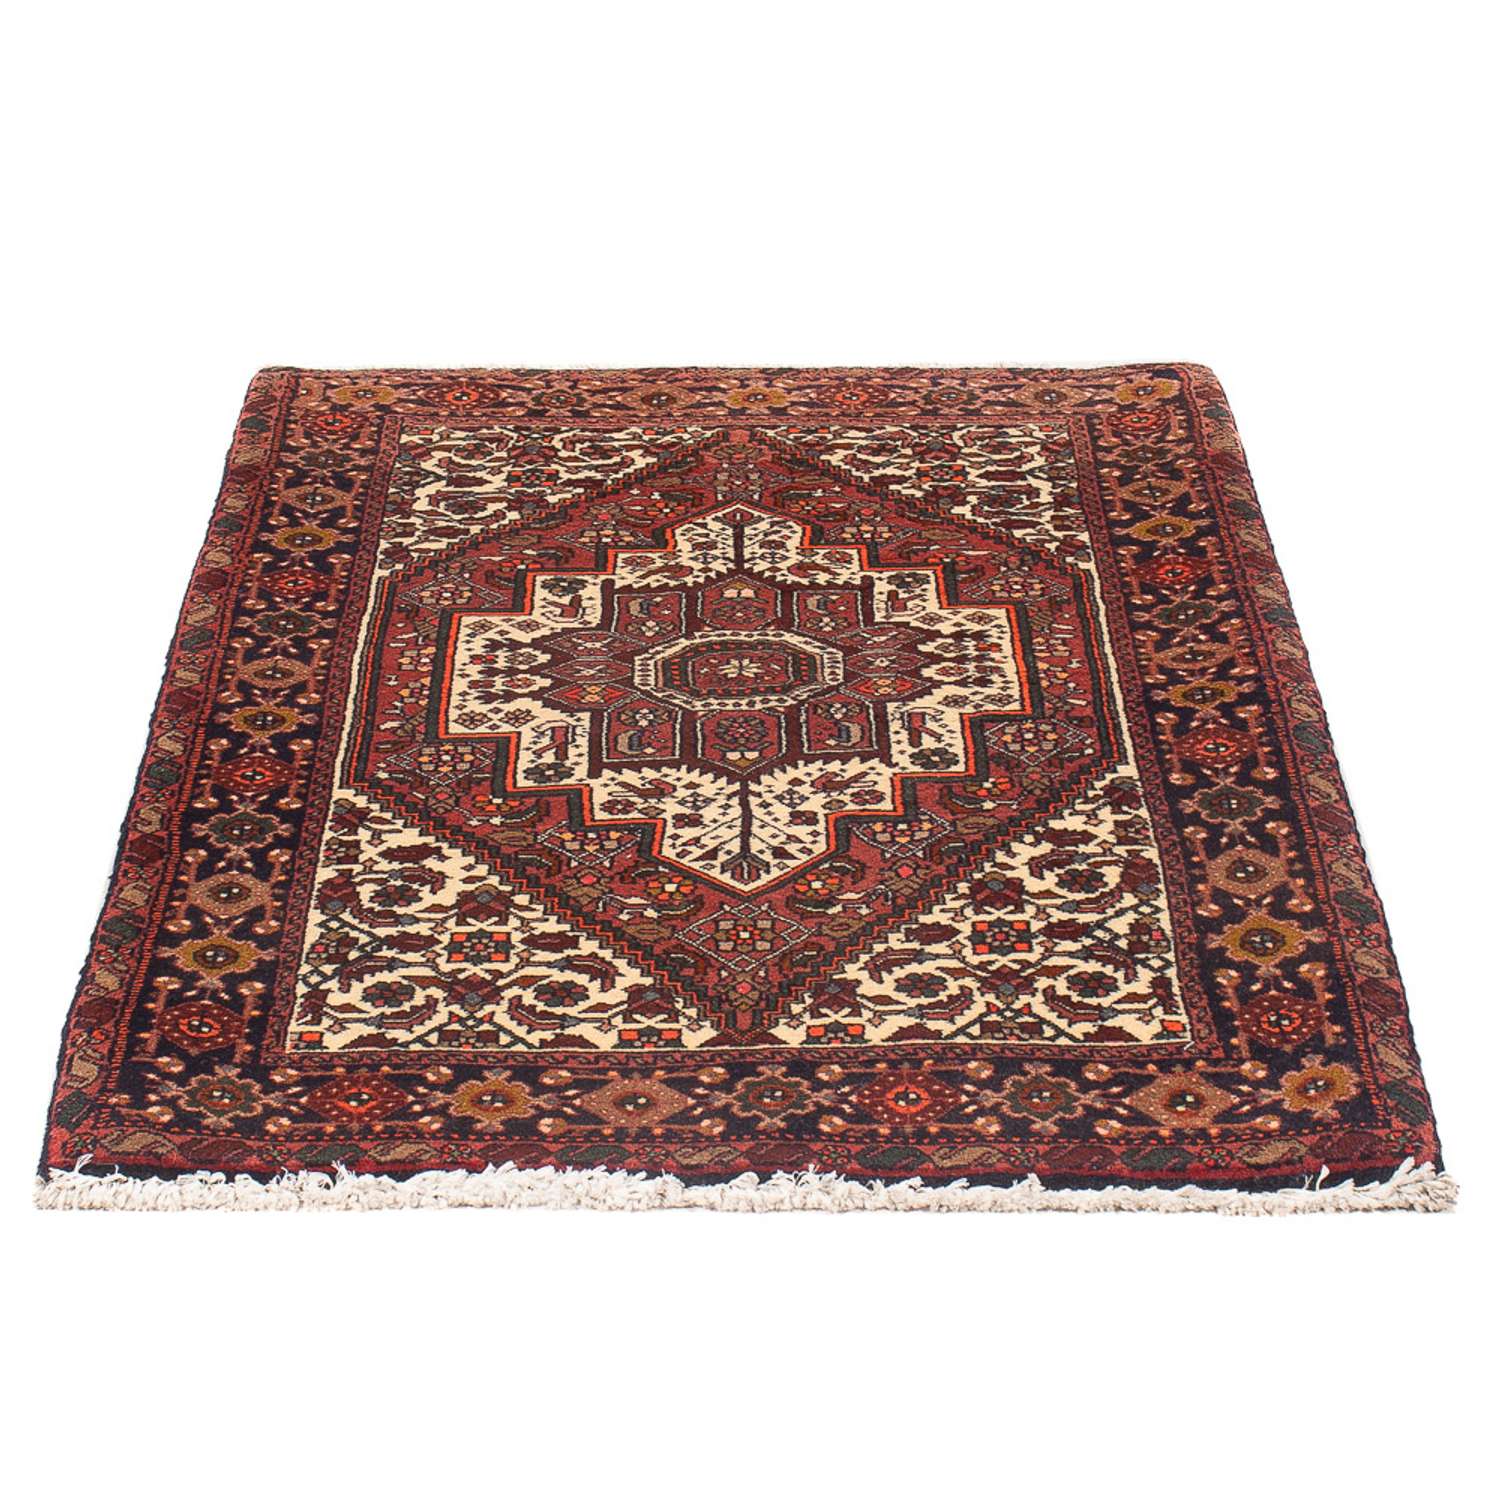 Persisk teppe - Nomadisk - 130 x 82 cm - krem